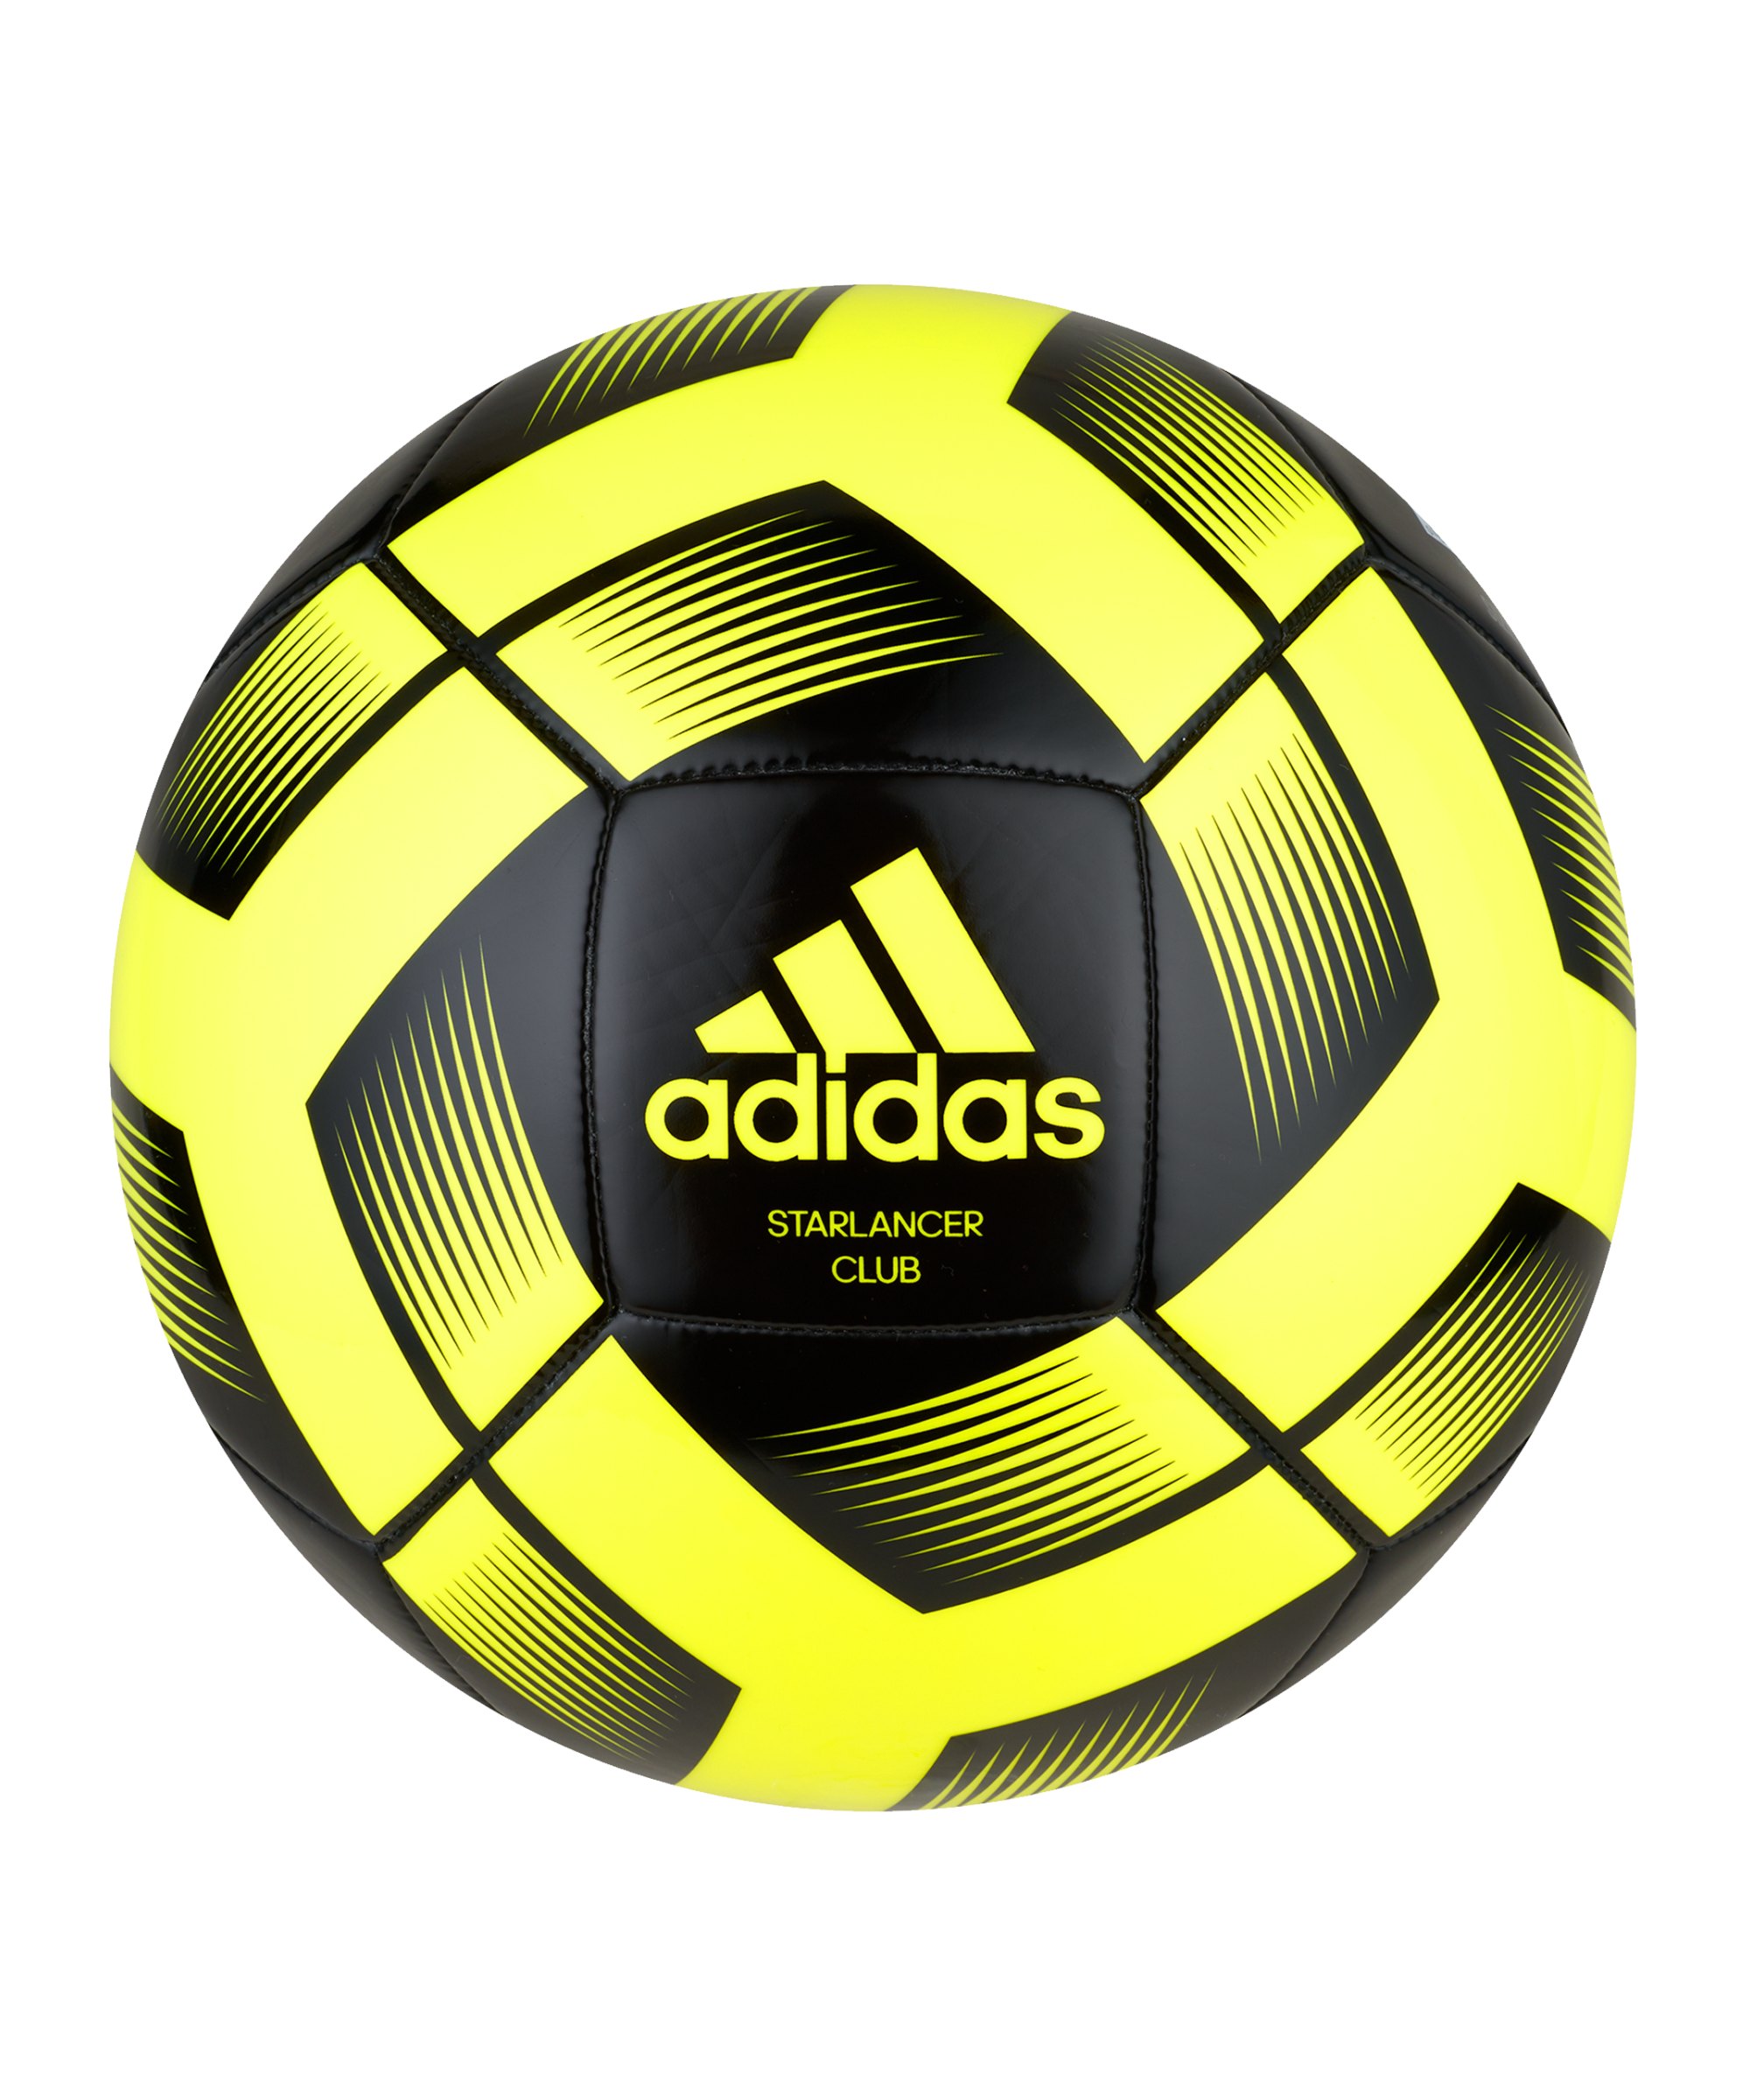 adidas Starlancer Club Trainingsball Gelb Schwarz - gelb